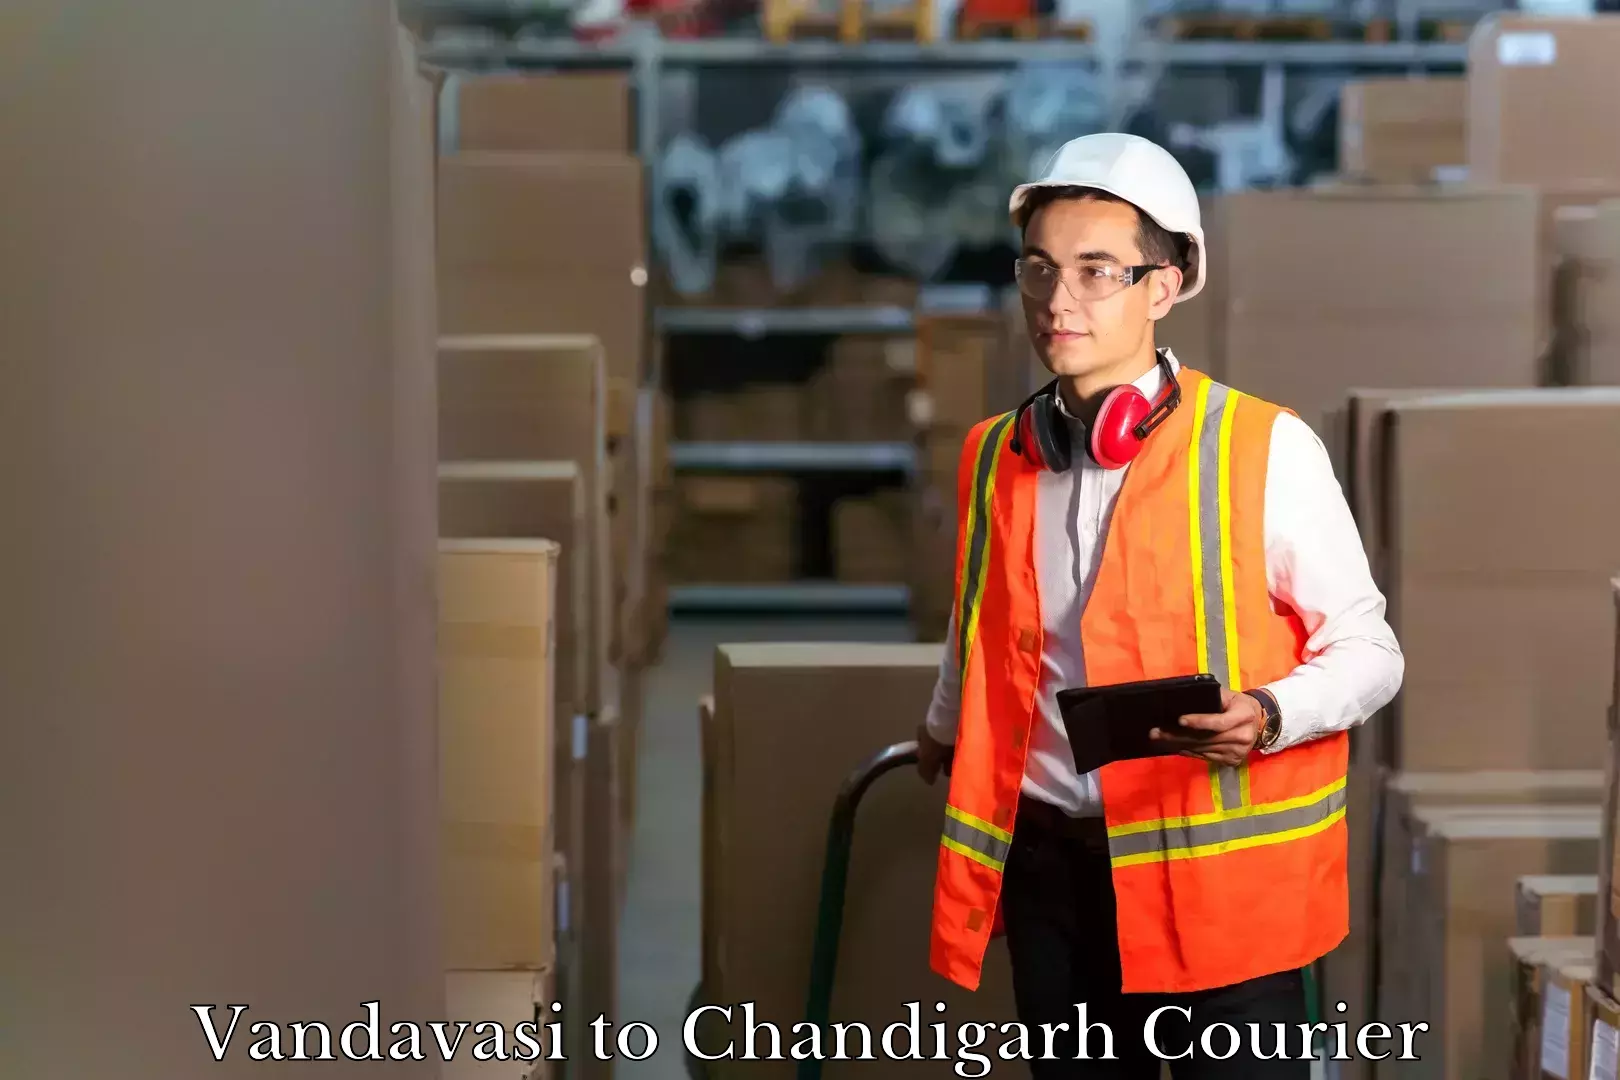 Emergency baggage service Vandavasi to Chandigarh